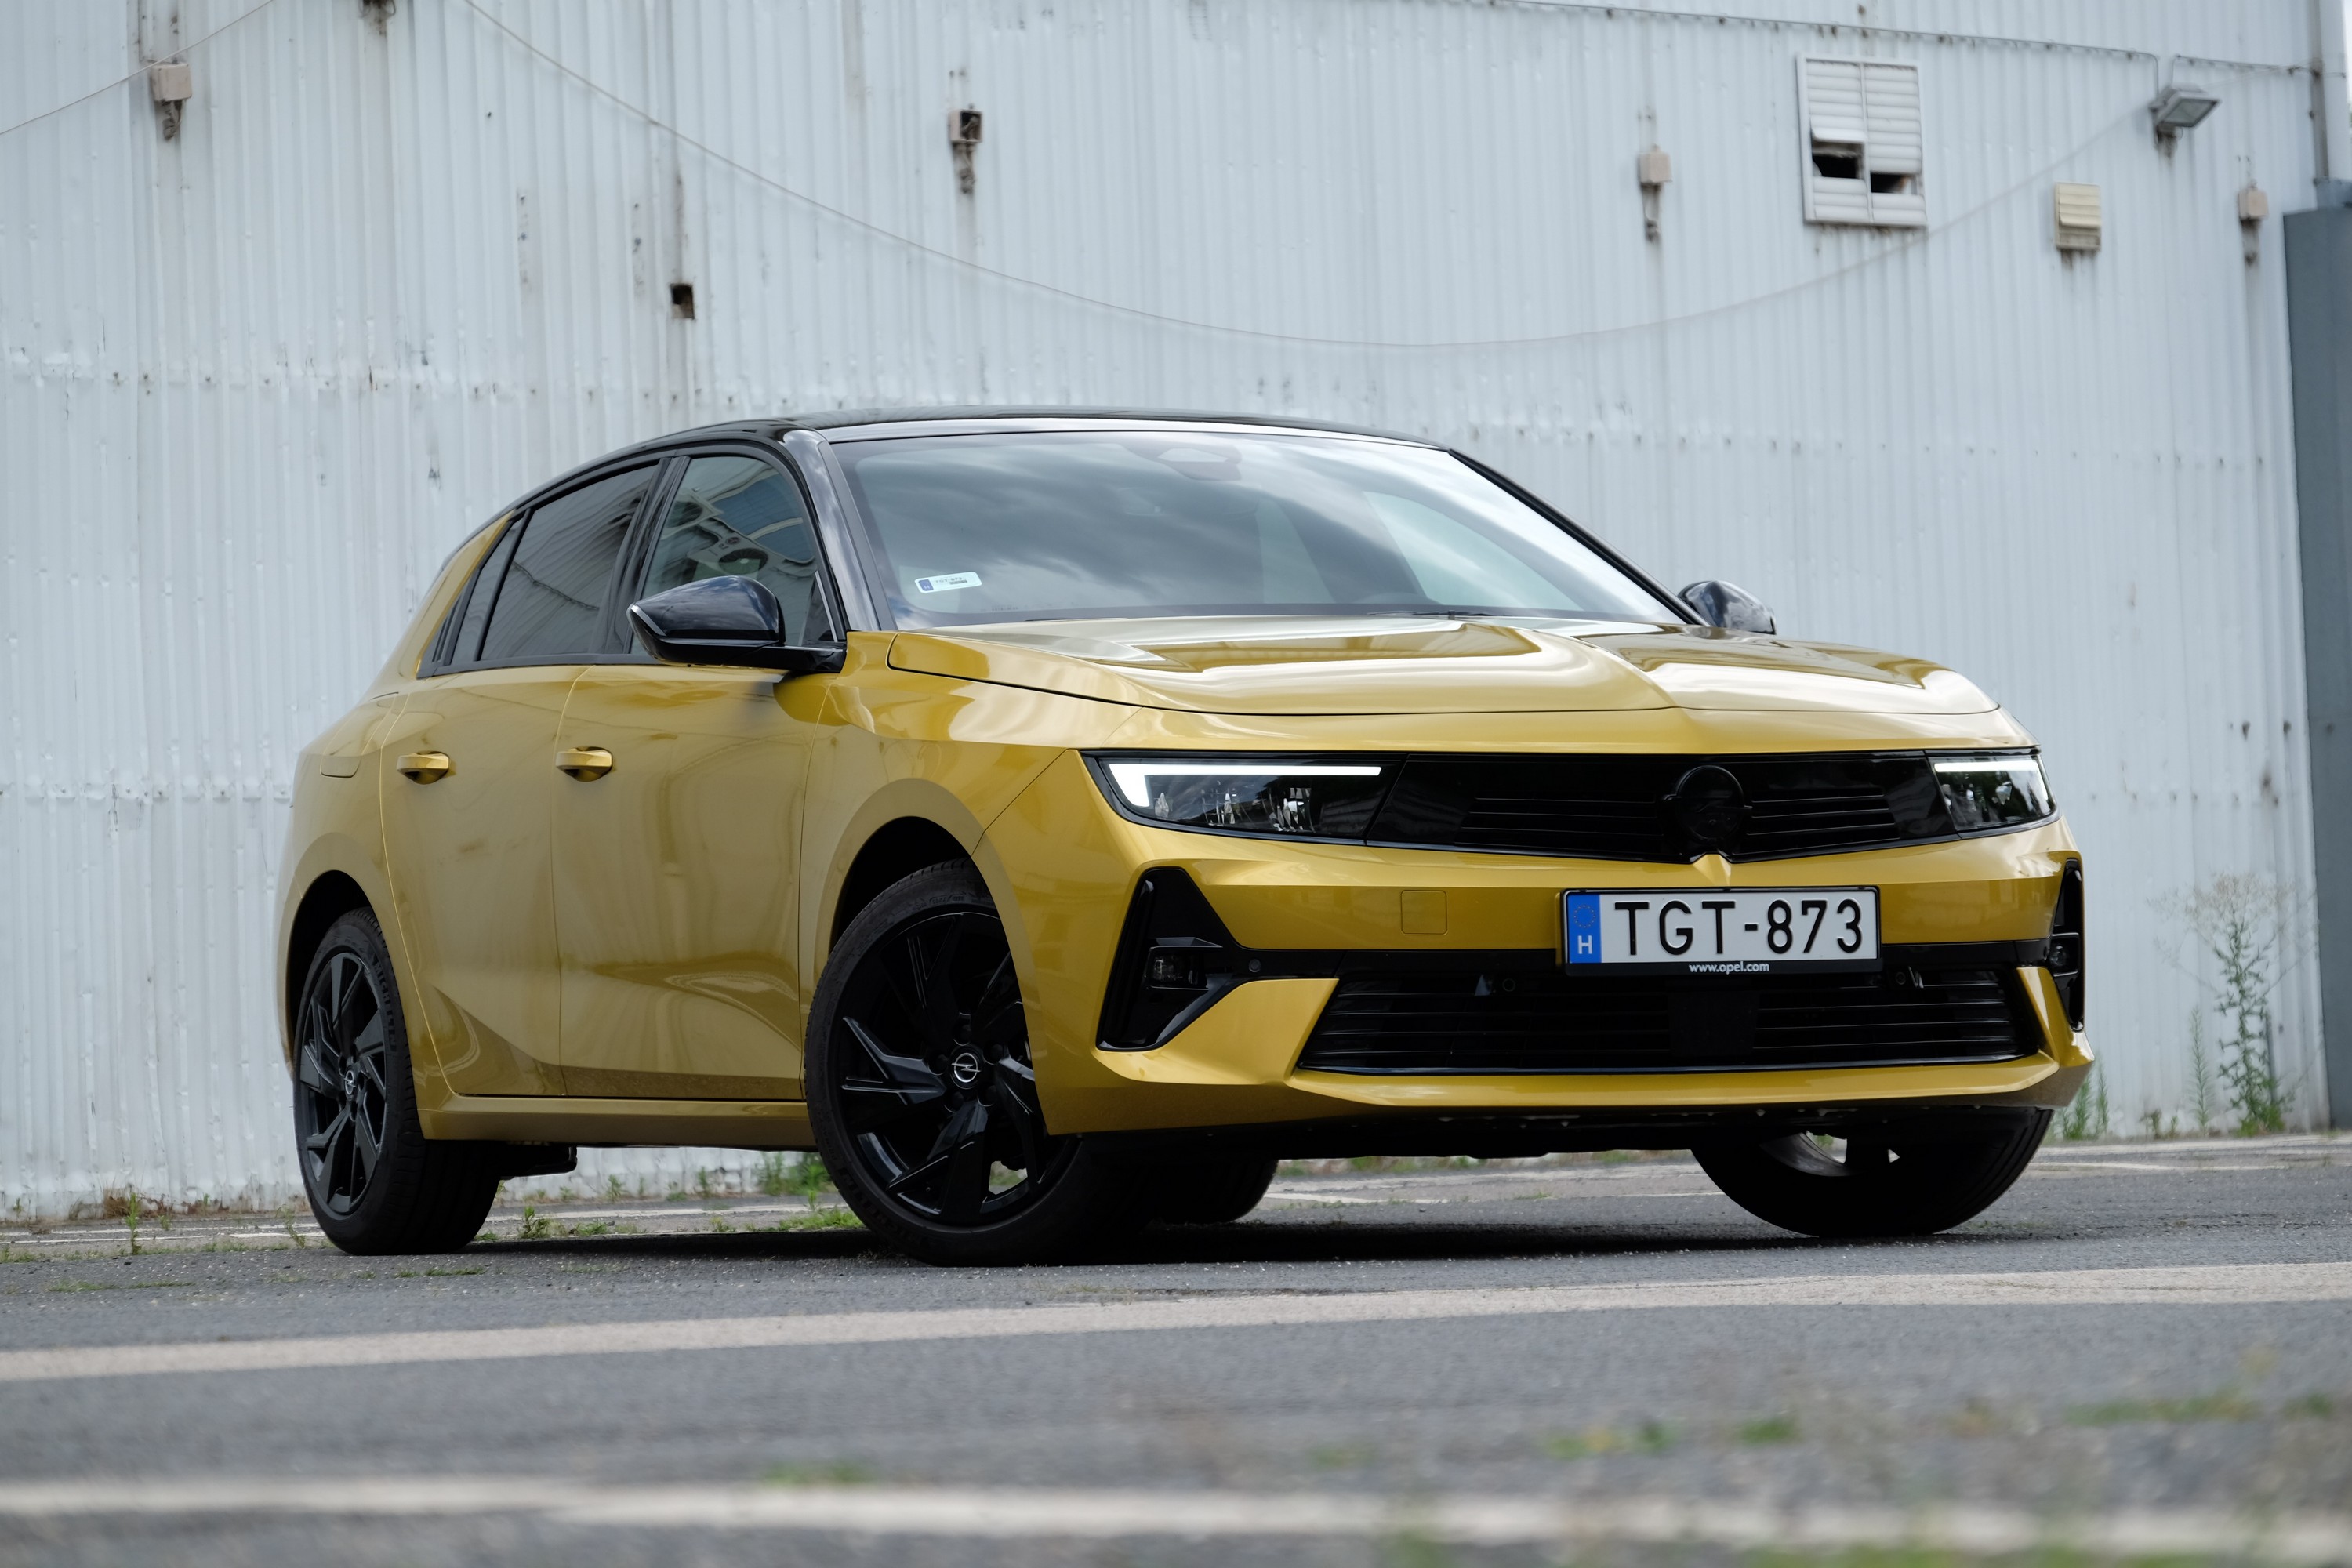 31 évesen a legjobb formában? – Teszten az új Opel Astra 6